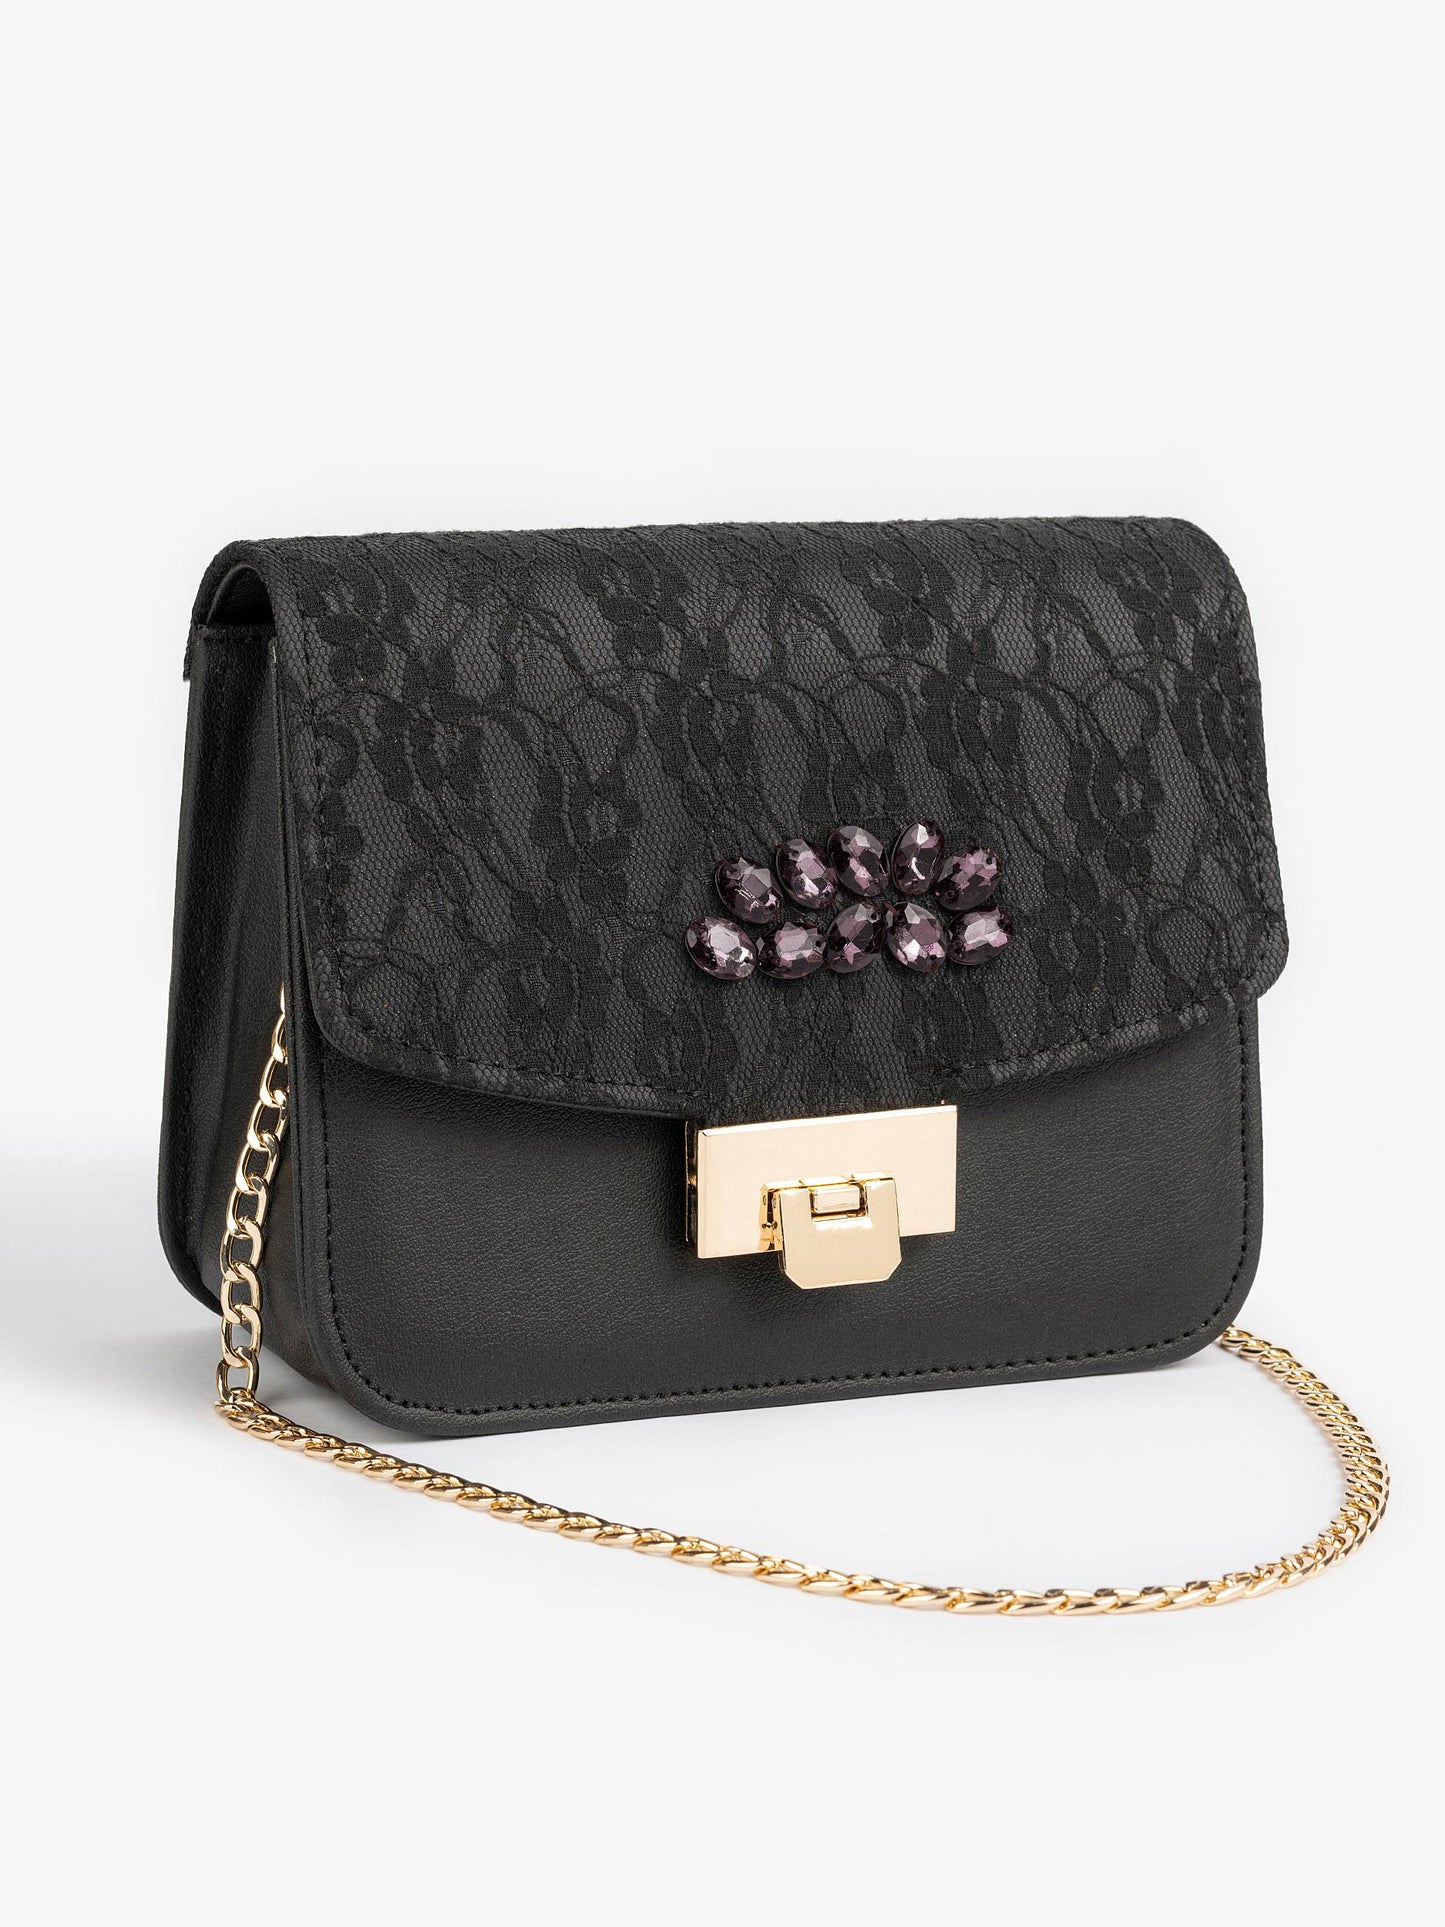 Embellished Handbag